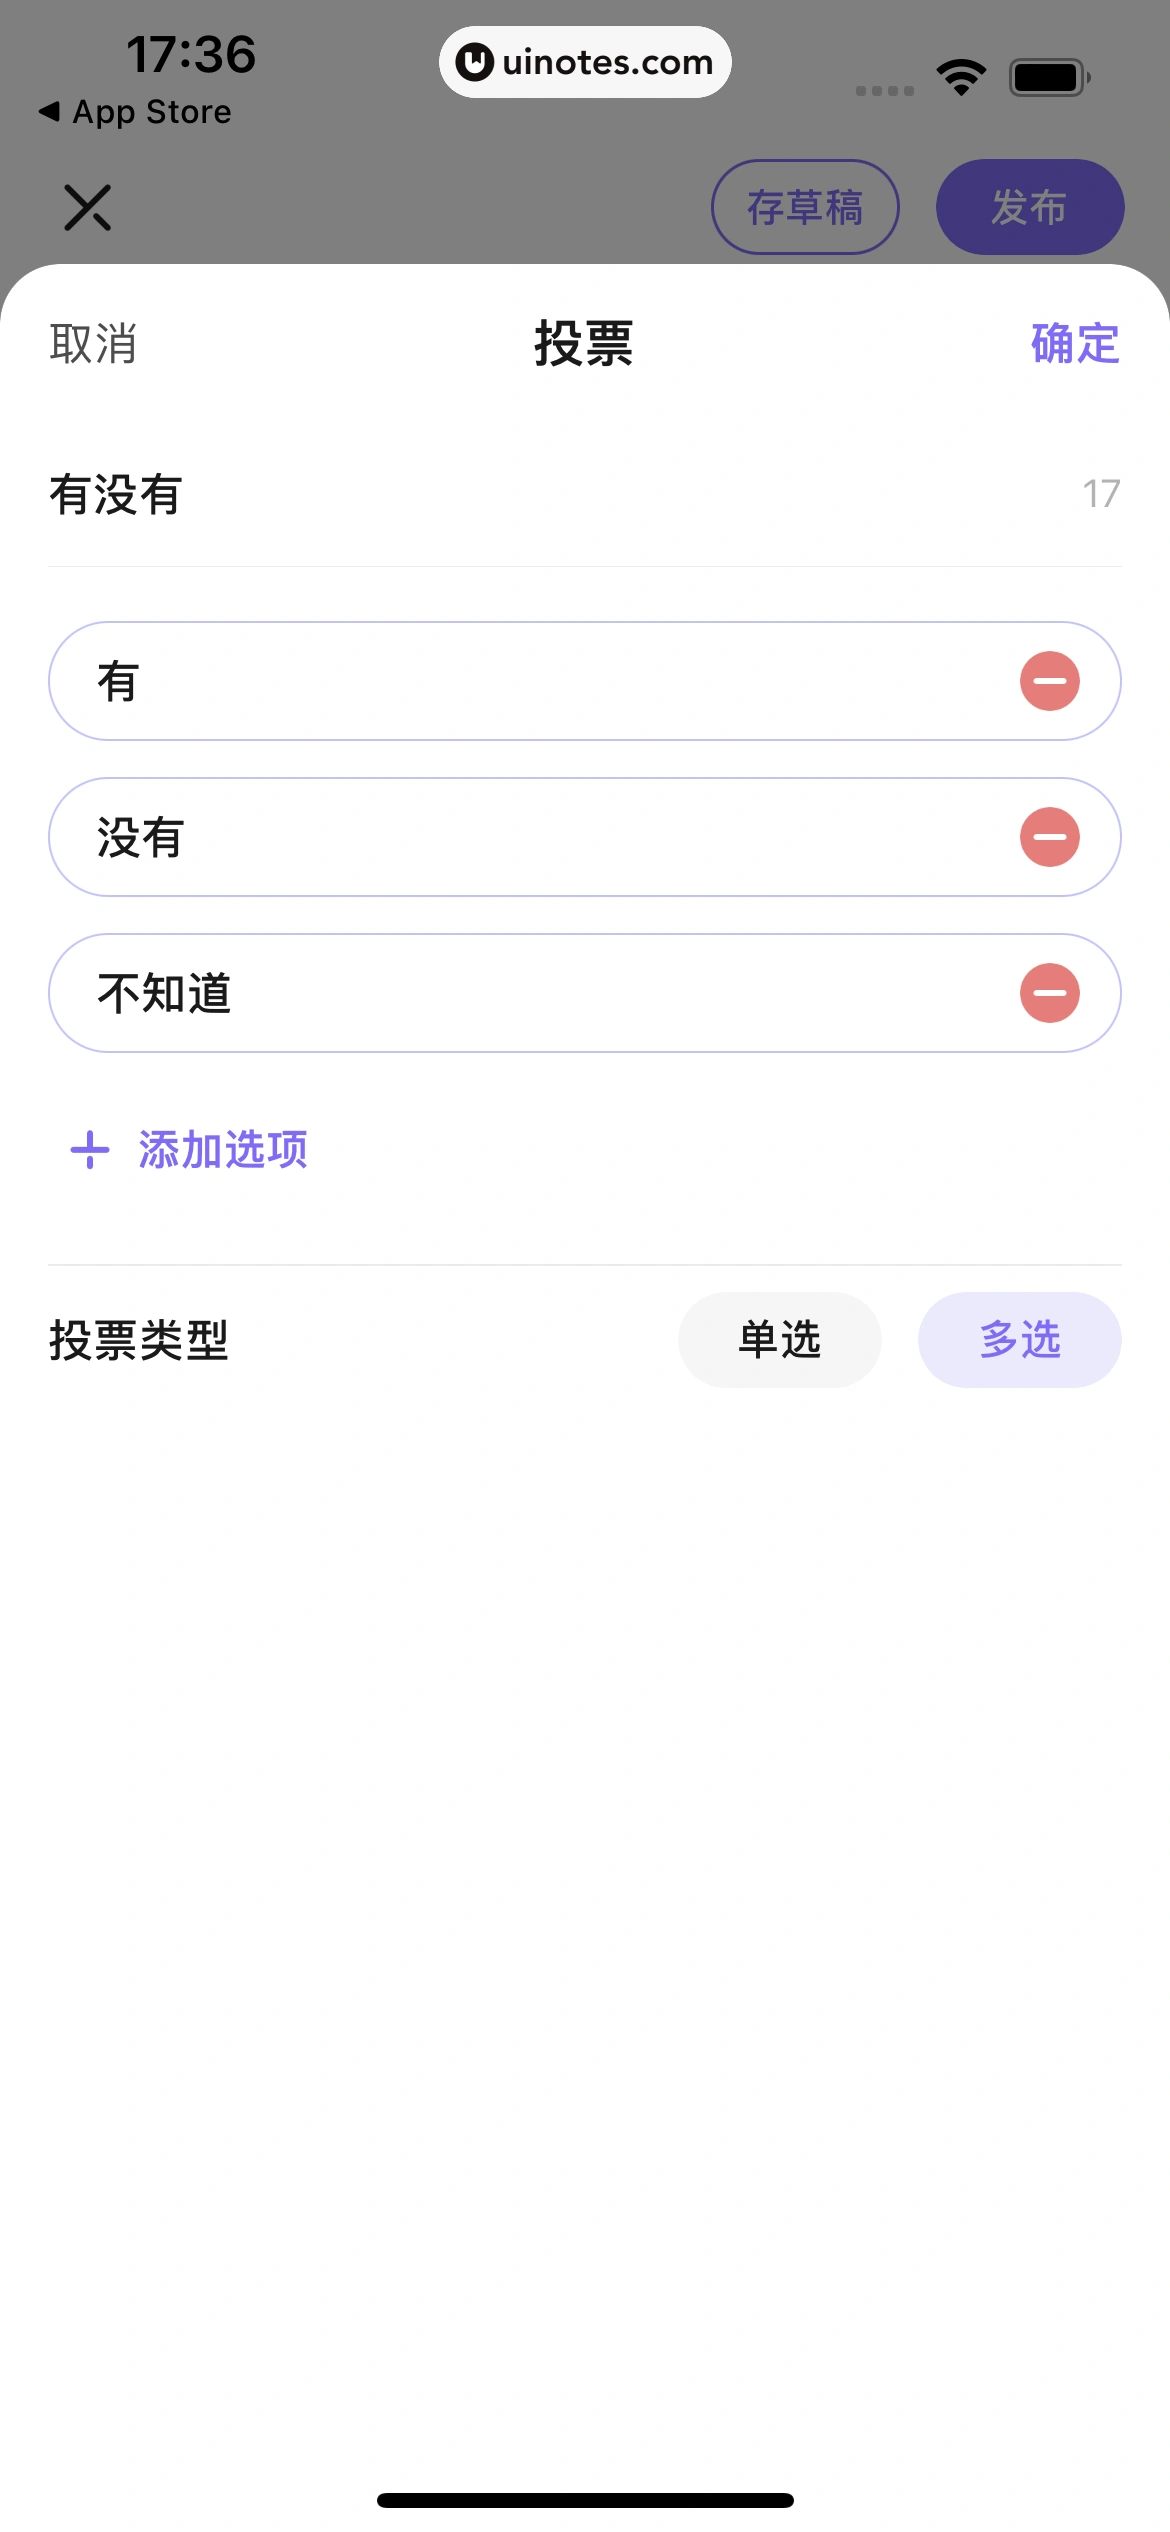 丁香医生 App 截图 065 - UI Notes